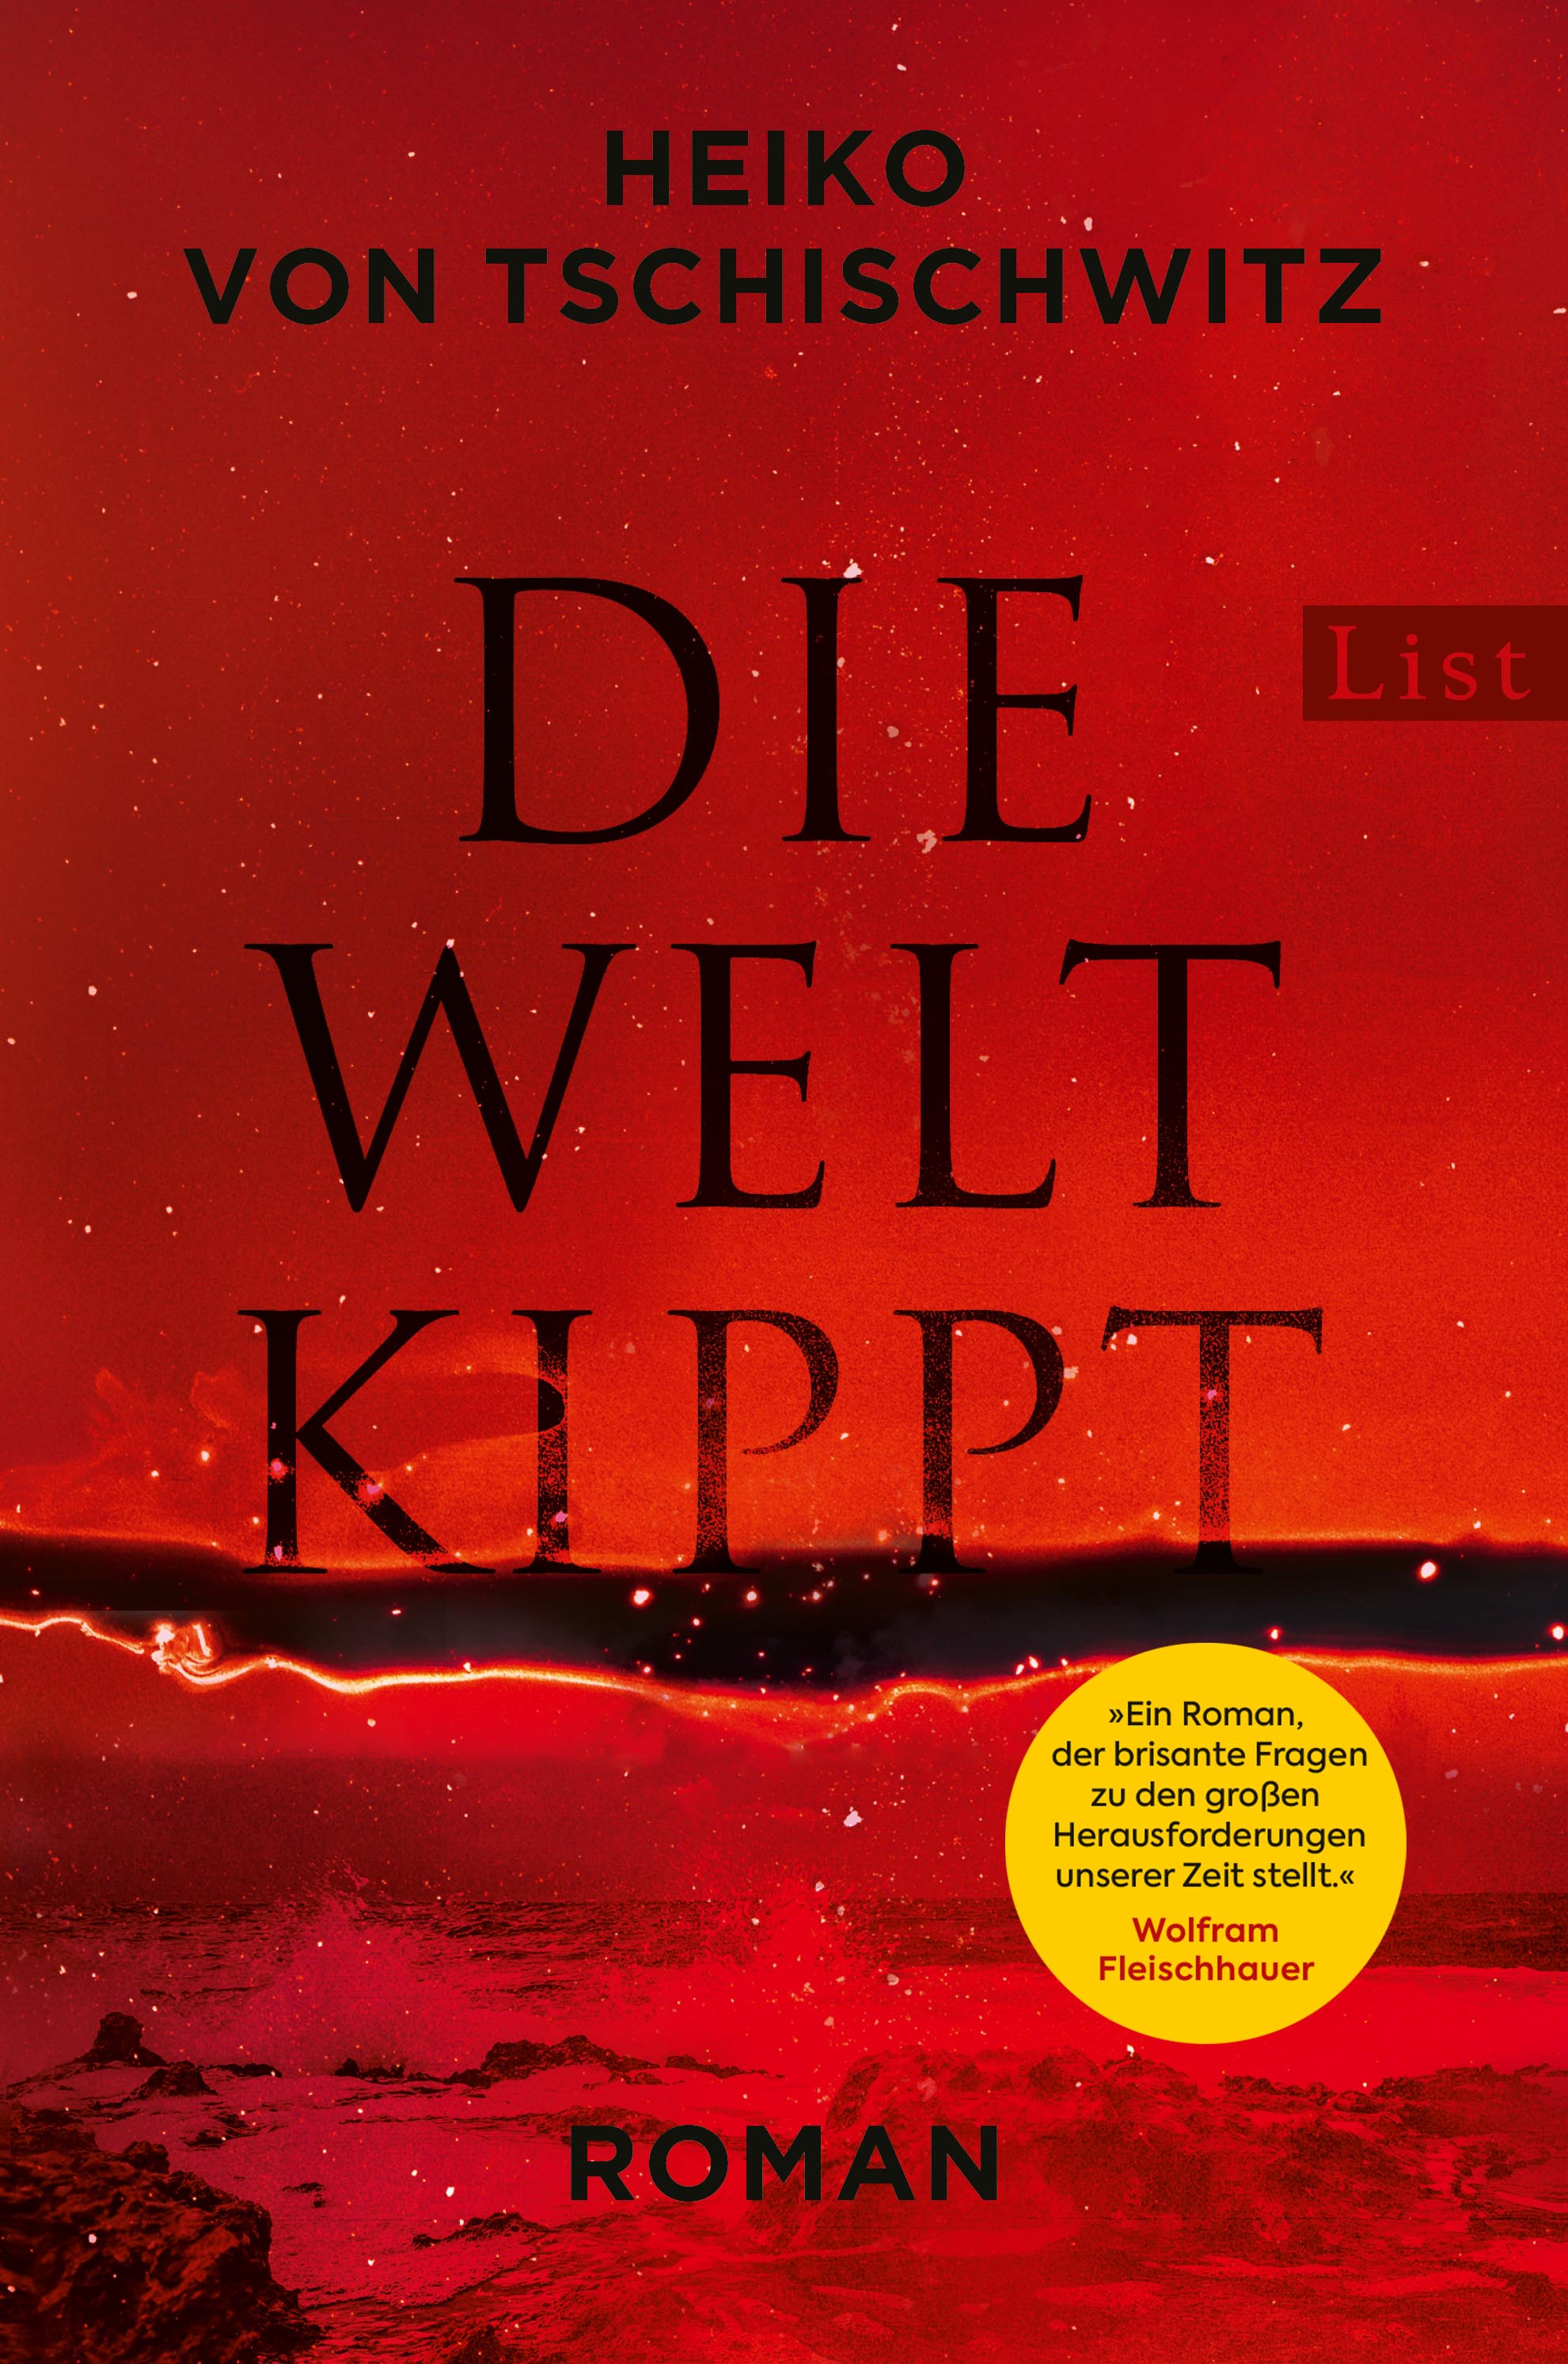 Heiko von Tschischwitz: Die Welt kippt (Paperback, deutsch language, List)